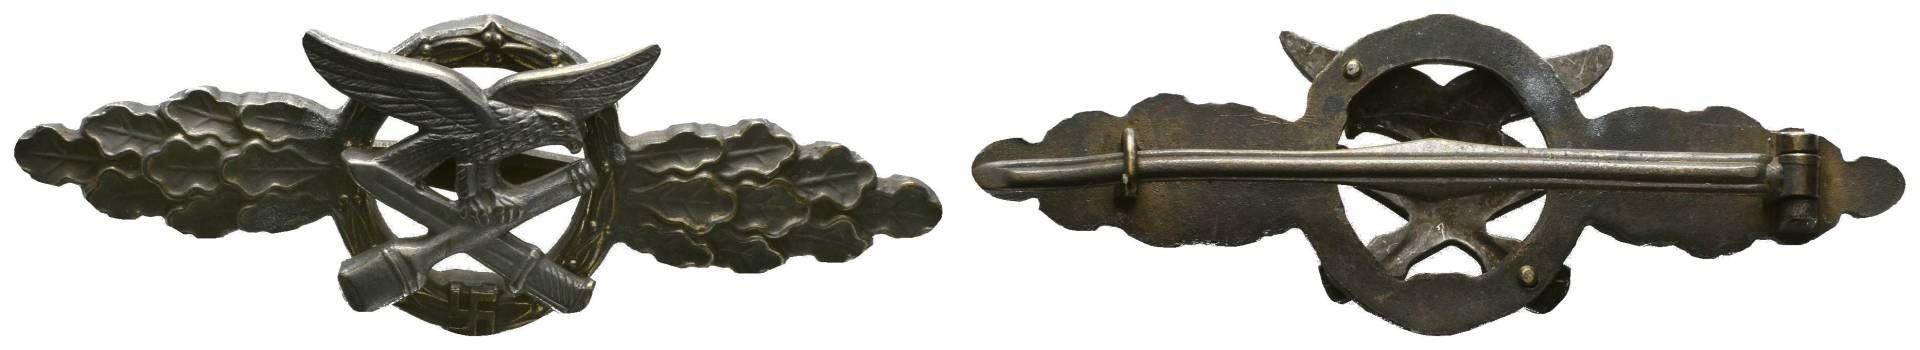 Nahkampfspange in Bronze, vermutlich eine typische Fertigung aus der Endphase des Krieges oder